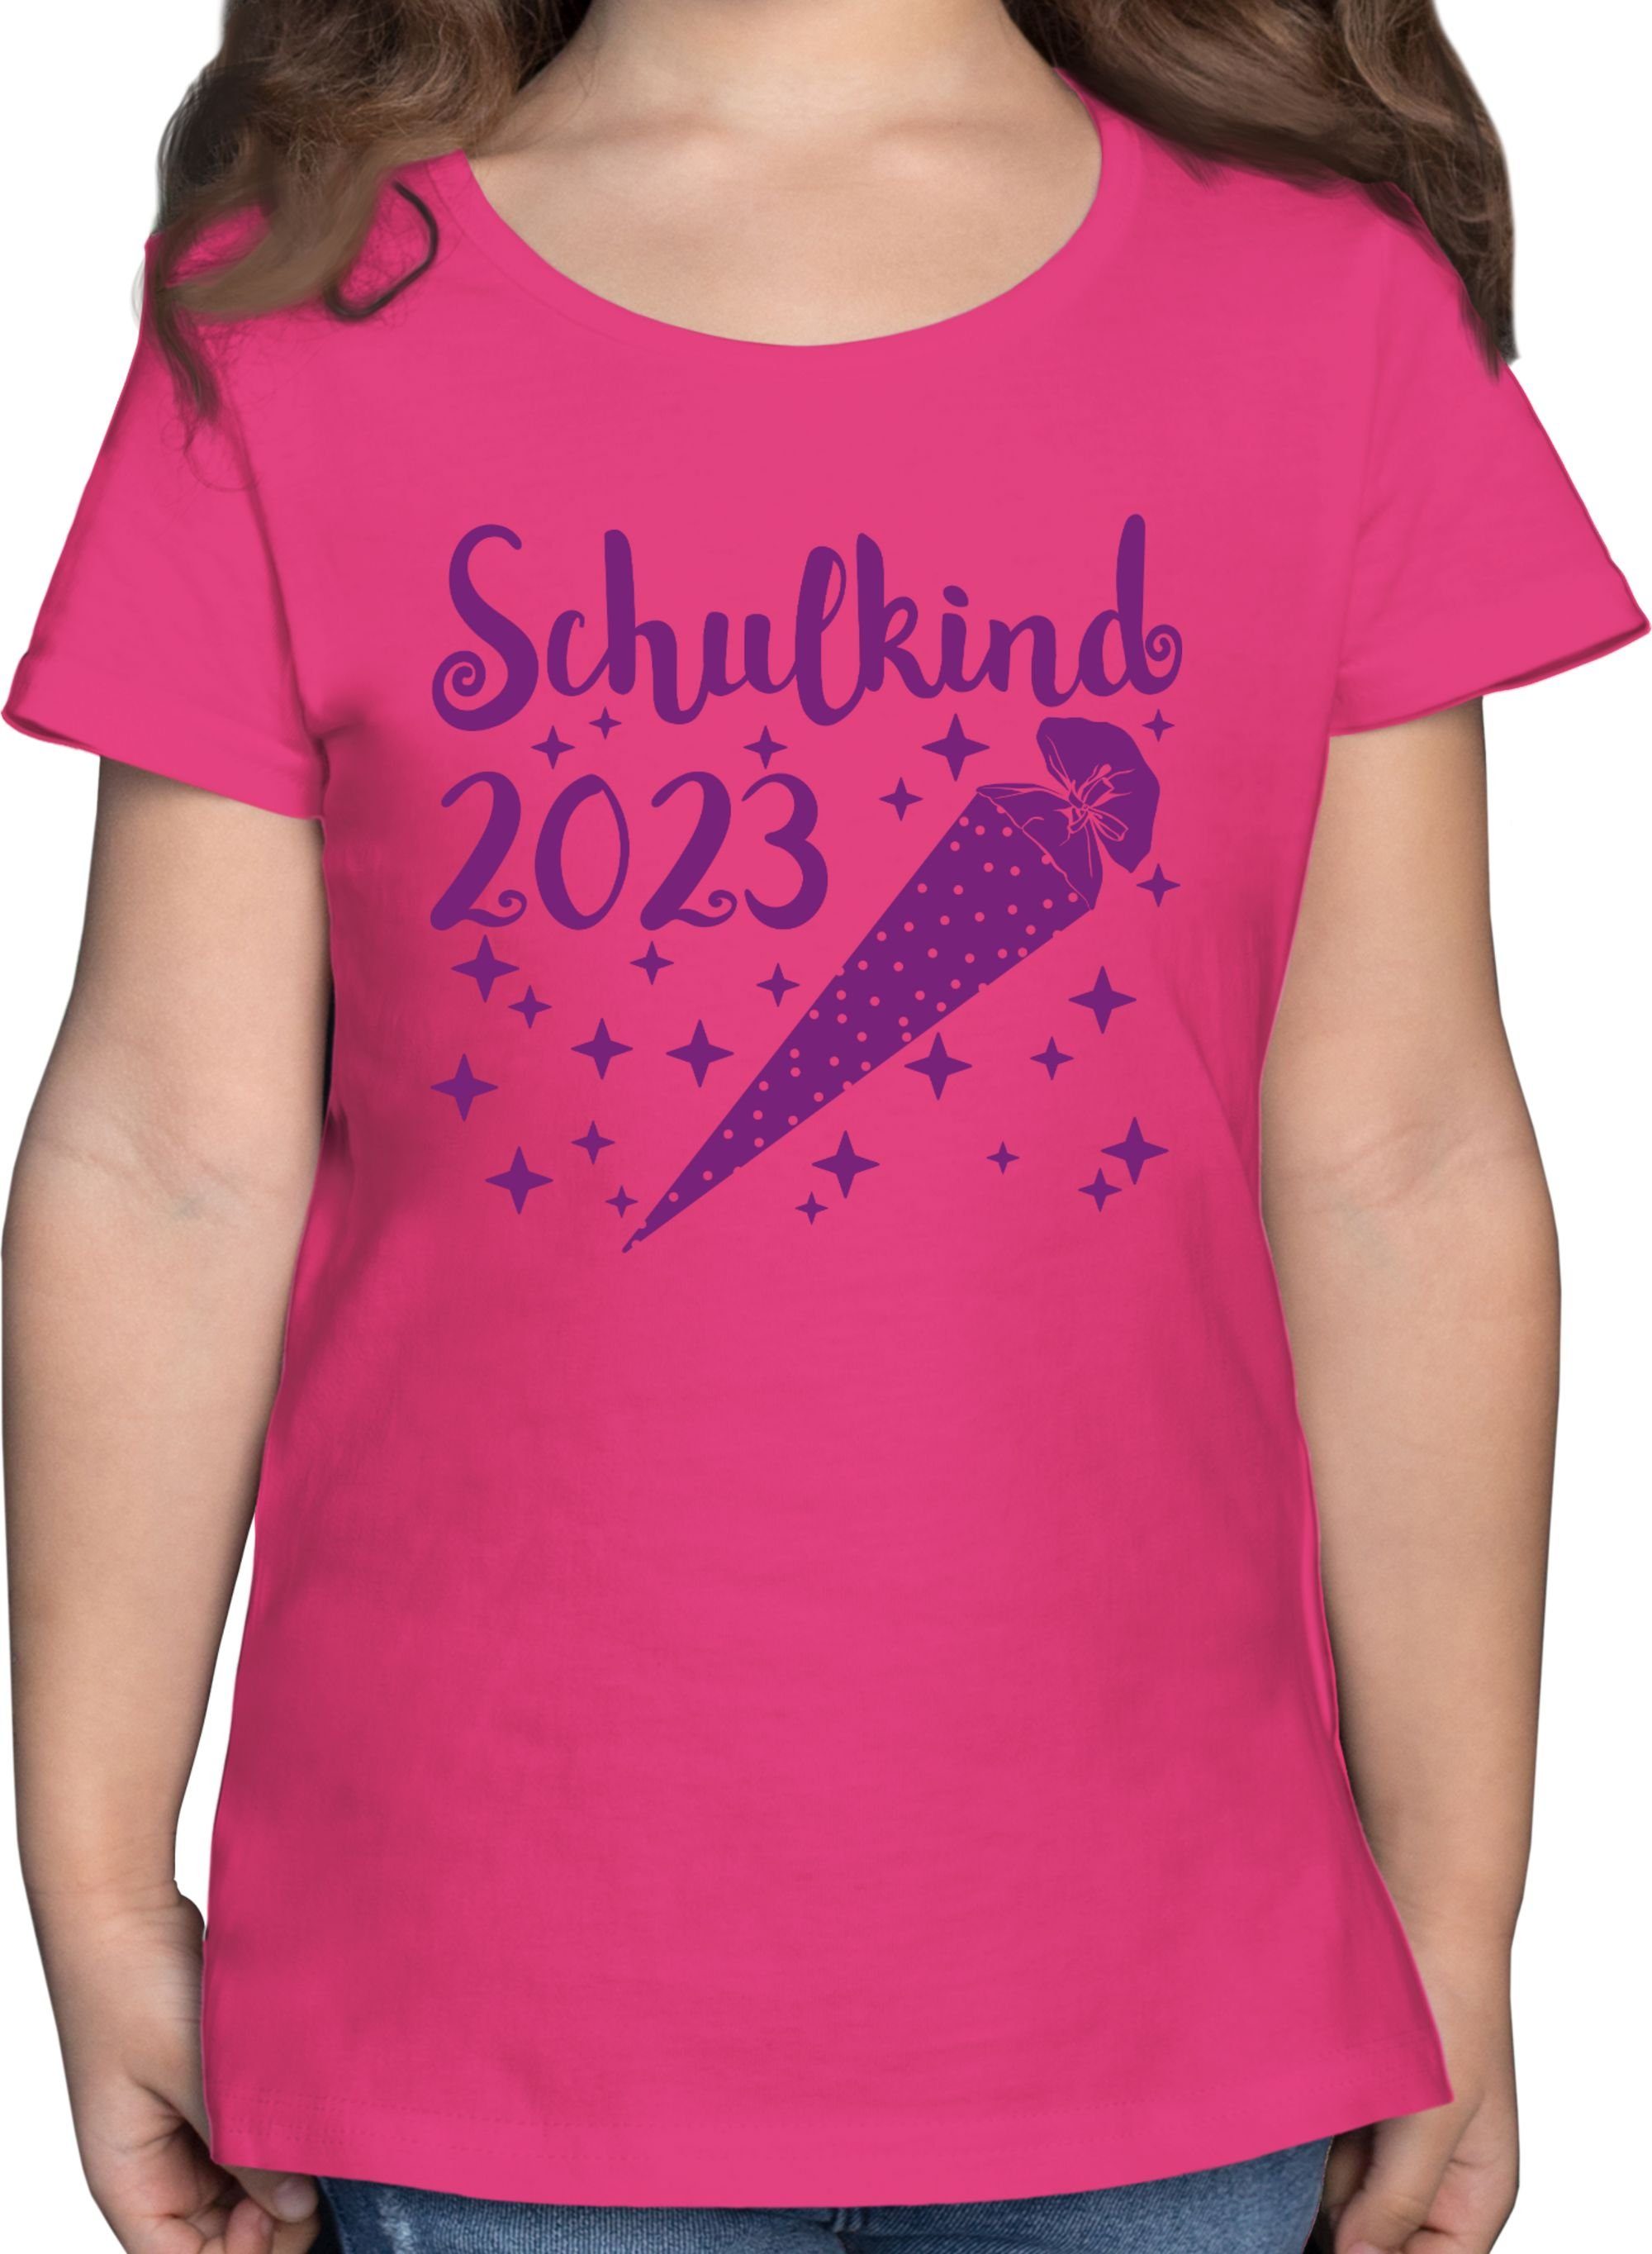 und - T-Shirt Einschulung Shirtracer - 3 Mädchen lila Schultüte Fuchsia Sternchen Schulkind 2023